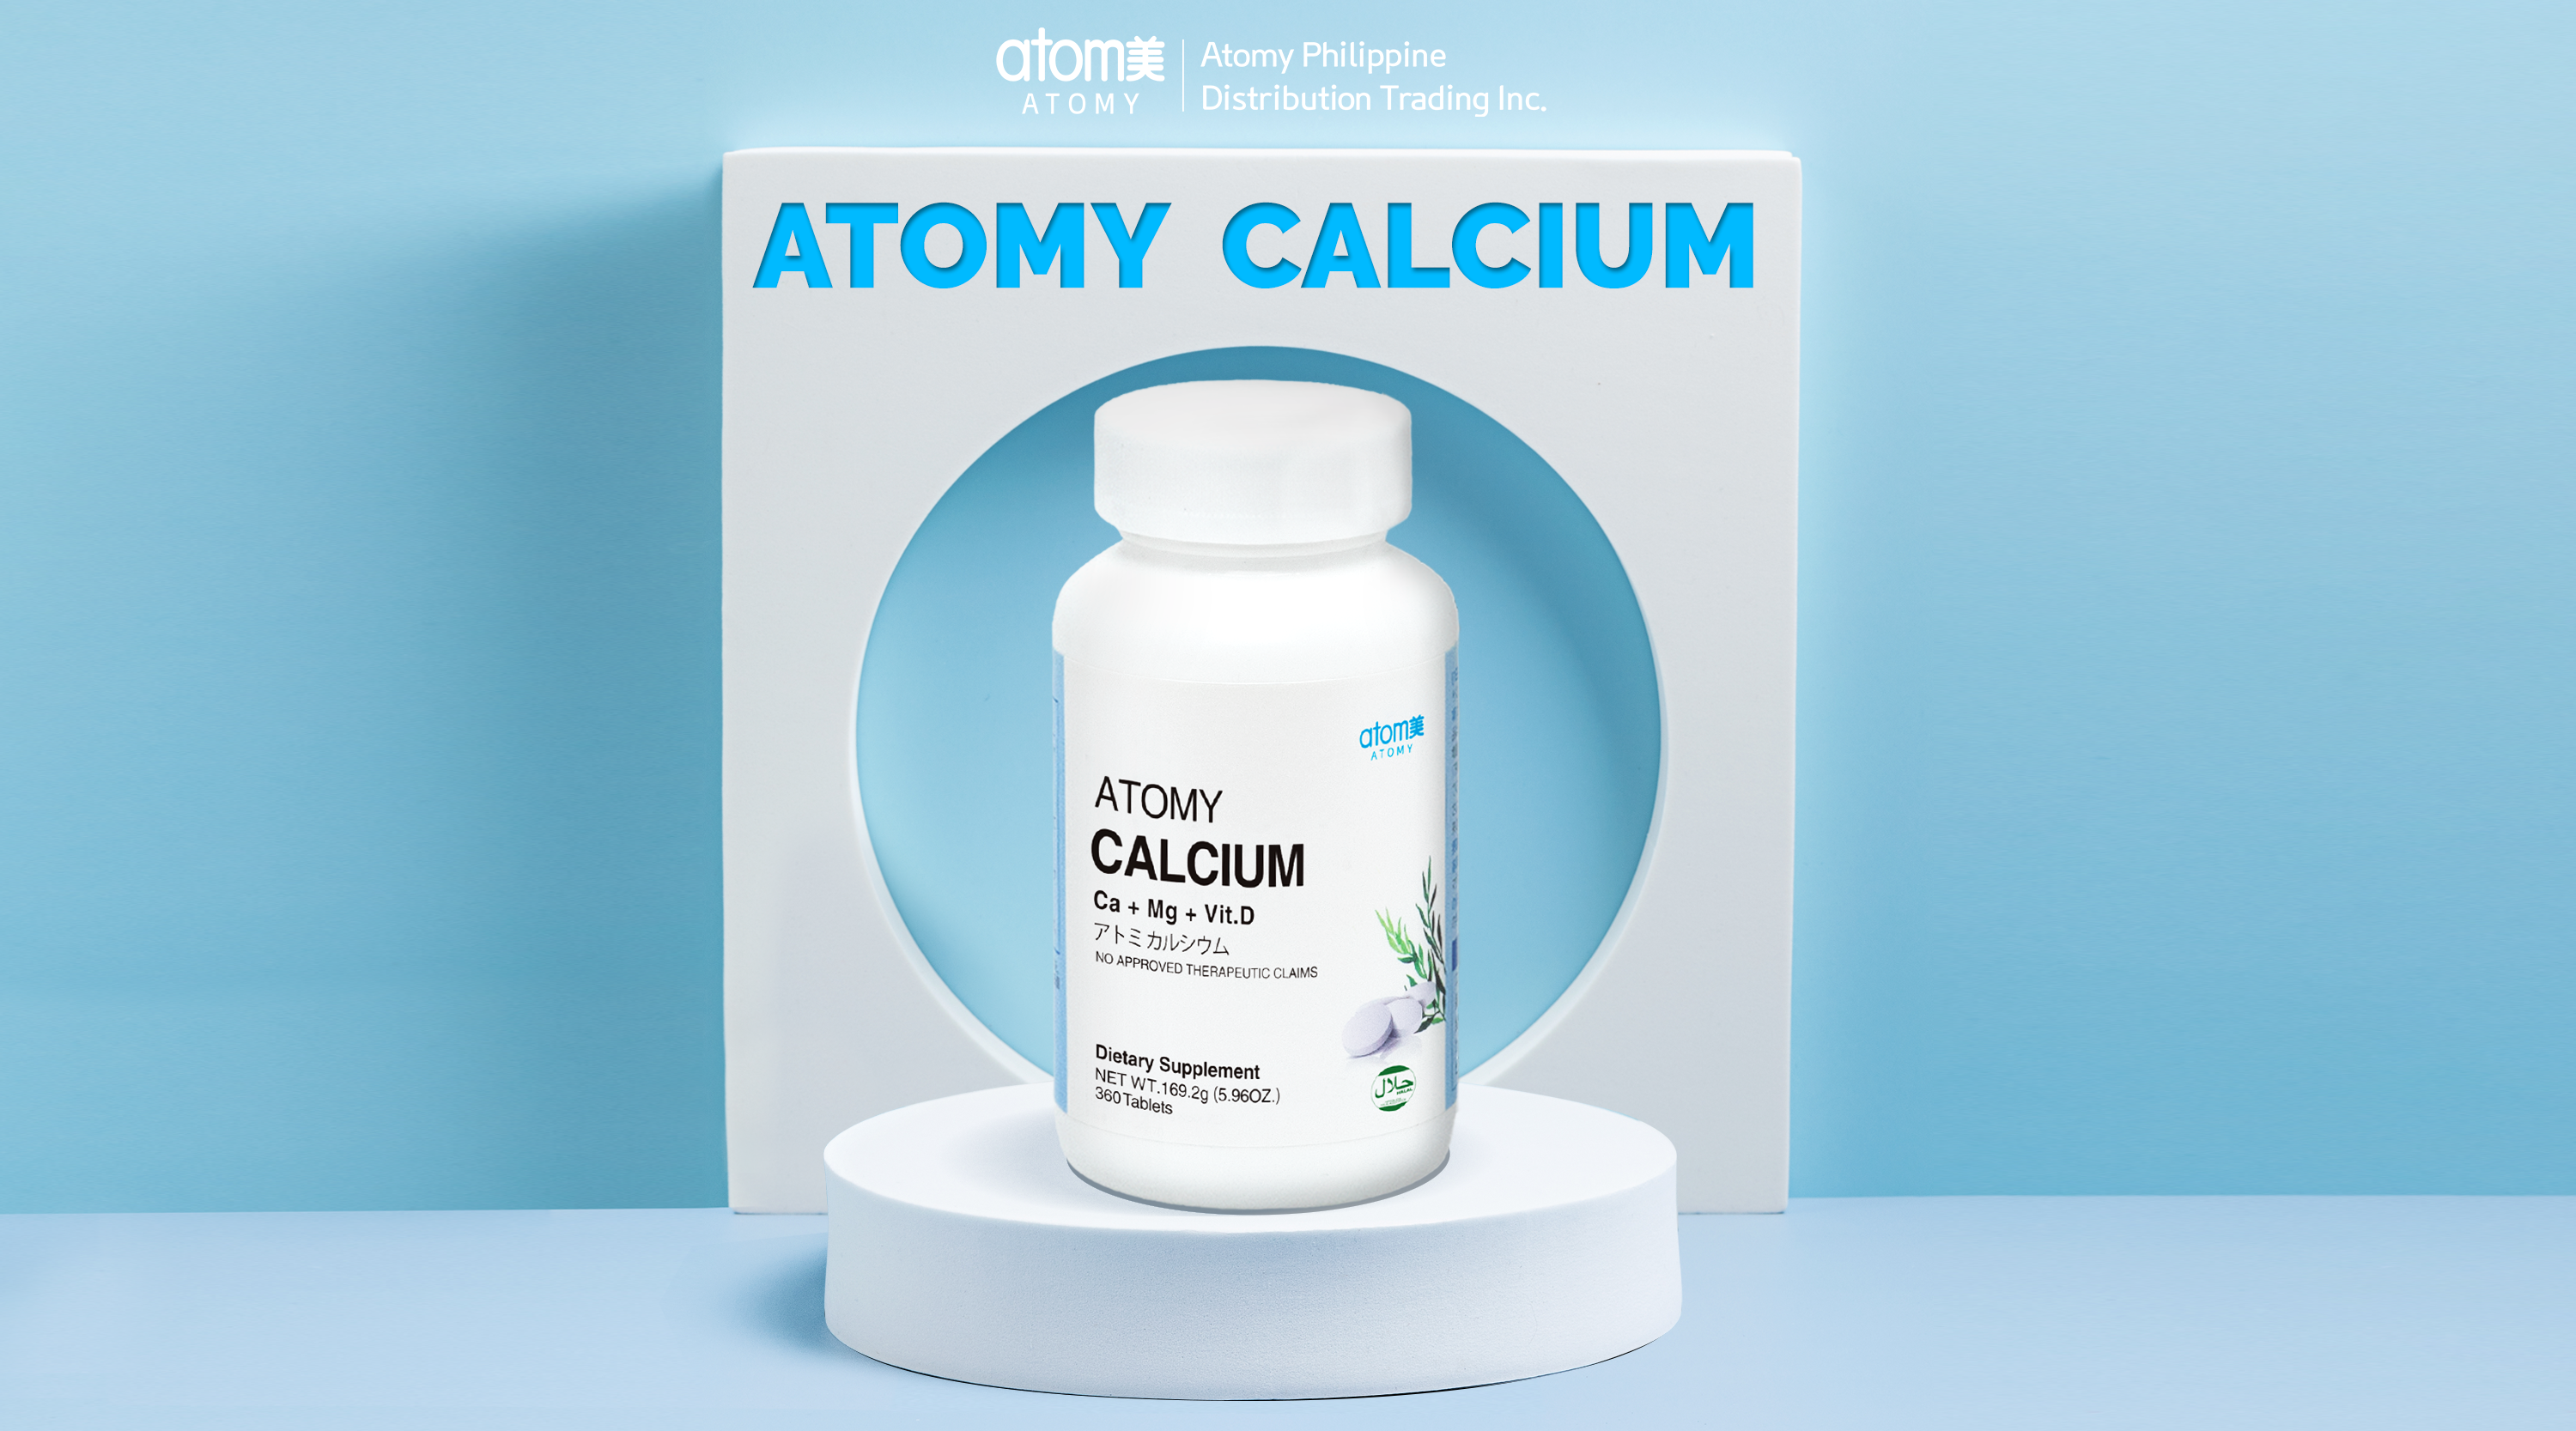 Atomy Calcium